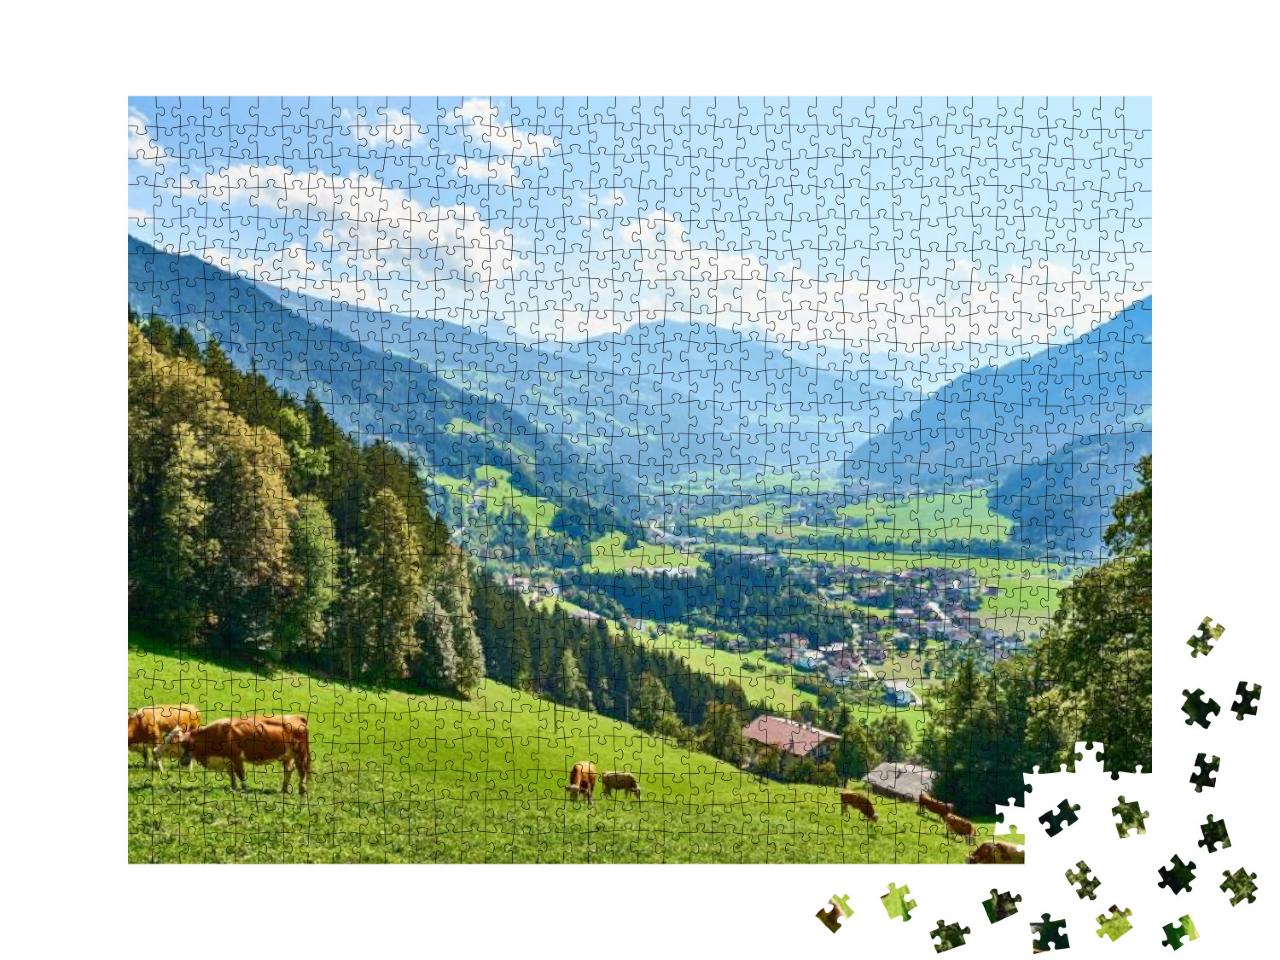 Puzzle 1000 Teile „Wunderschönes Zillertal in Tirol, Österreich“